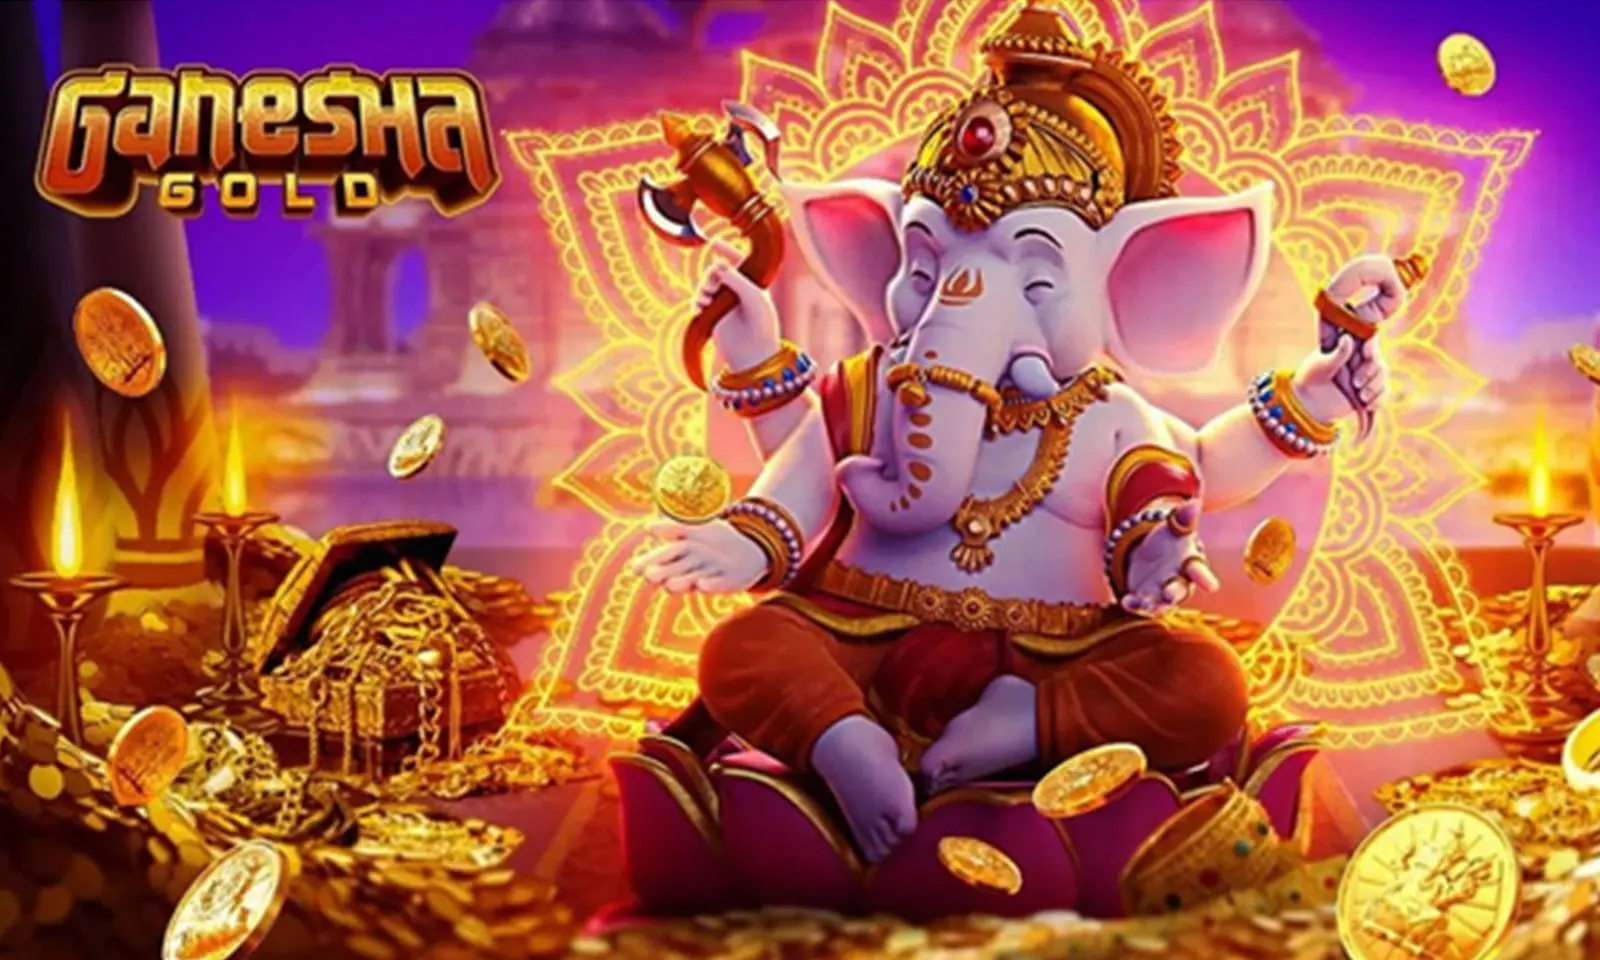 Ganesha Gold Jogo Online - Guia Completo para Jogadores Iniciantes